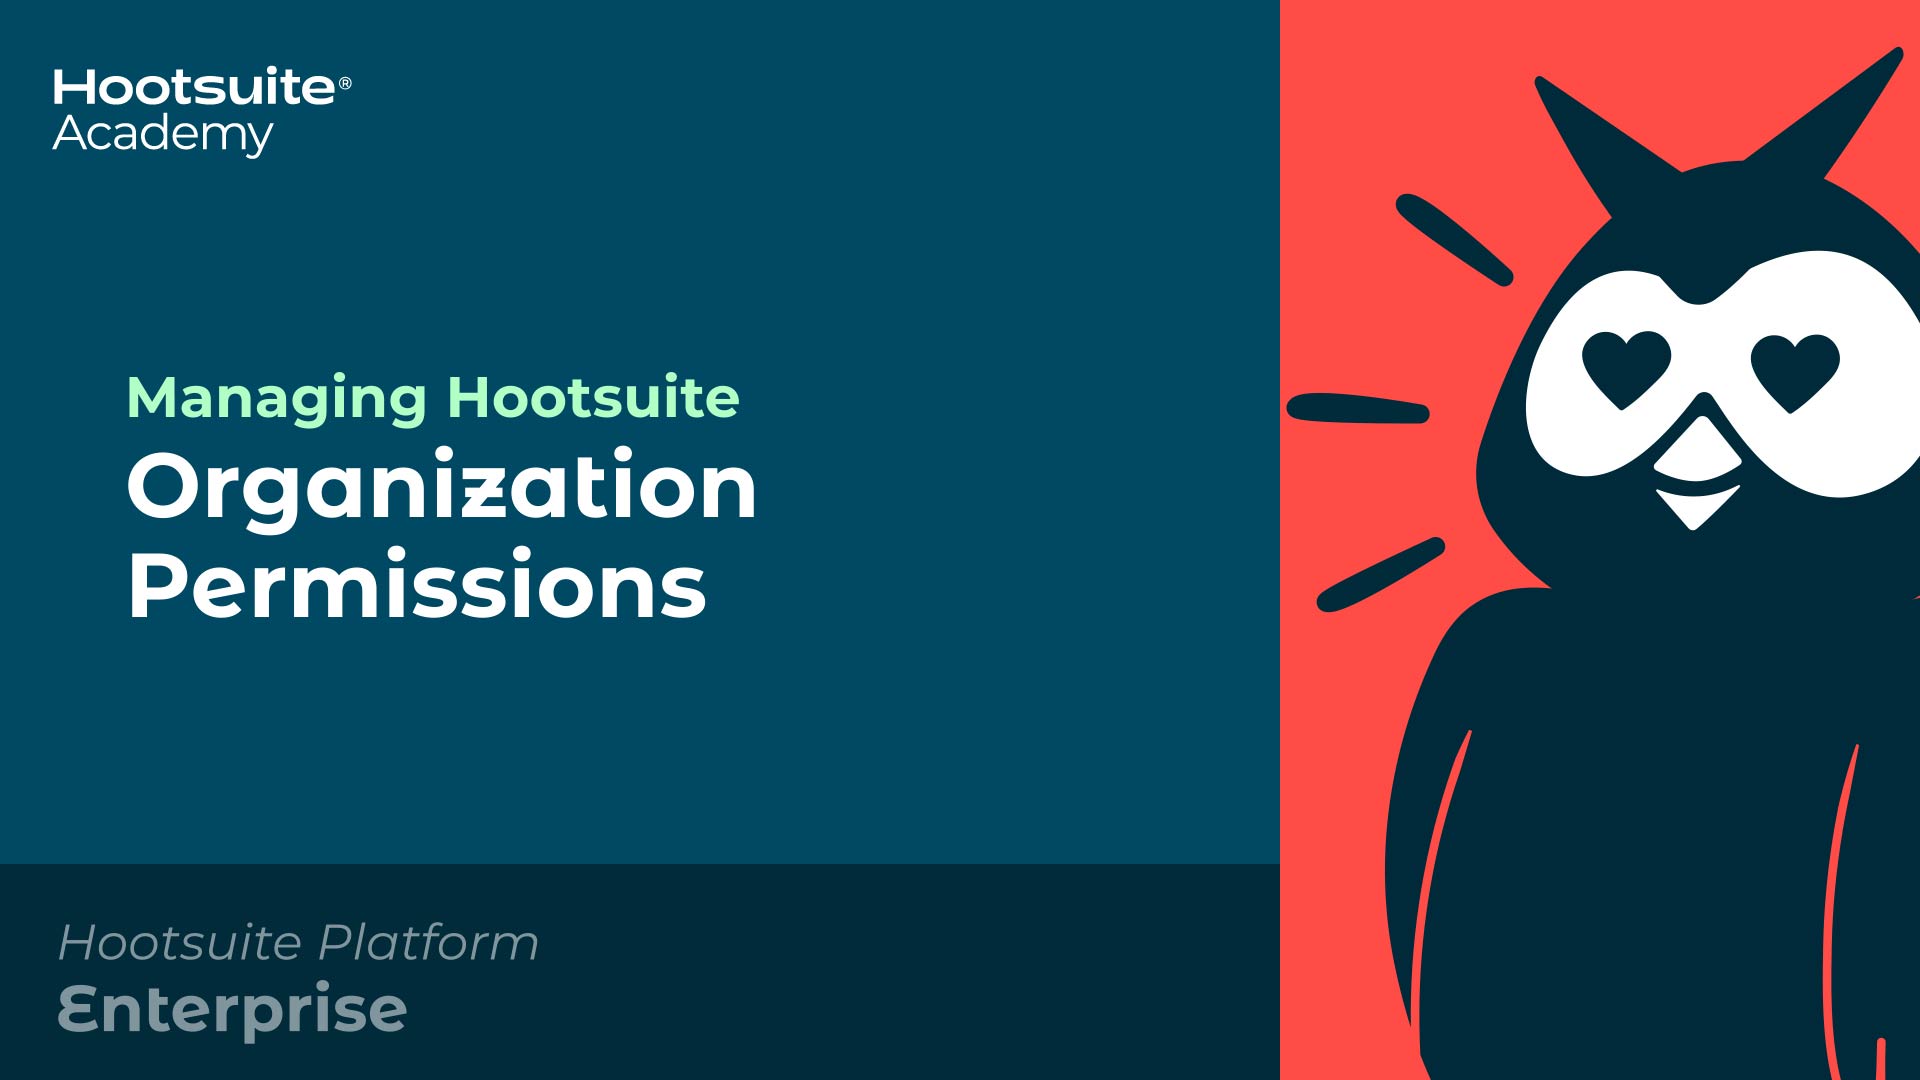 Vídeo sobre gerenciamento de permissões da organização Hootsuite.